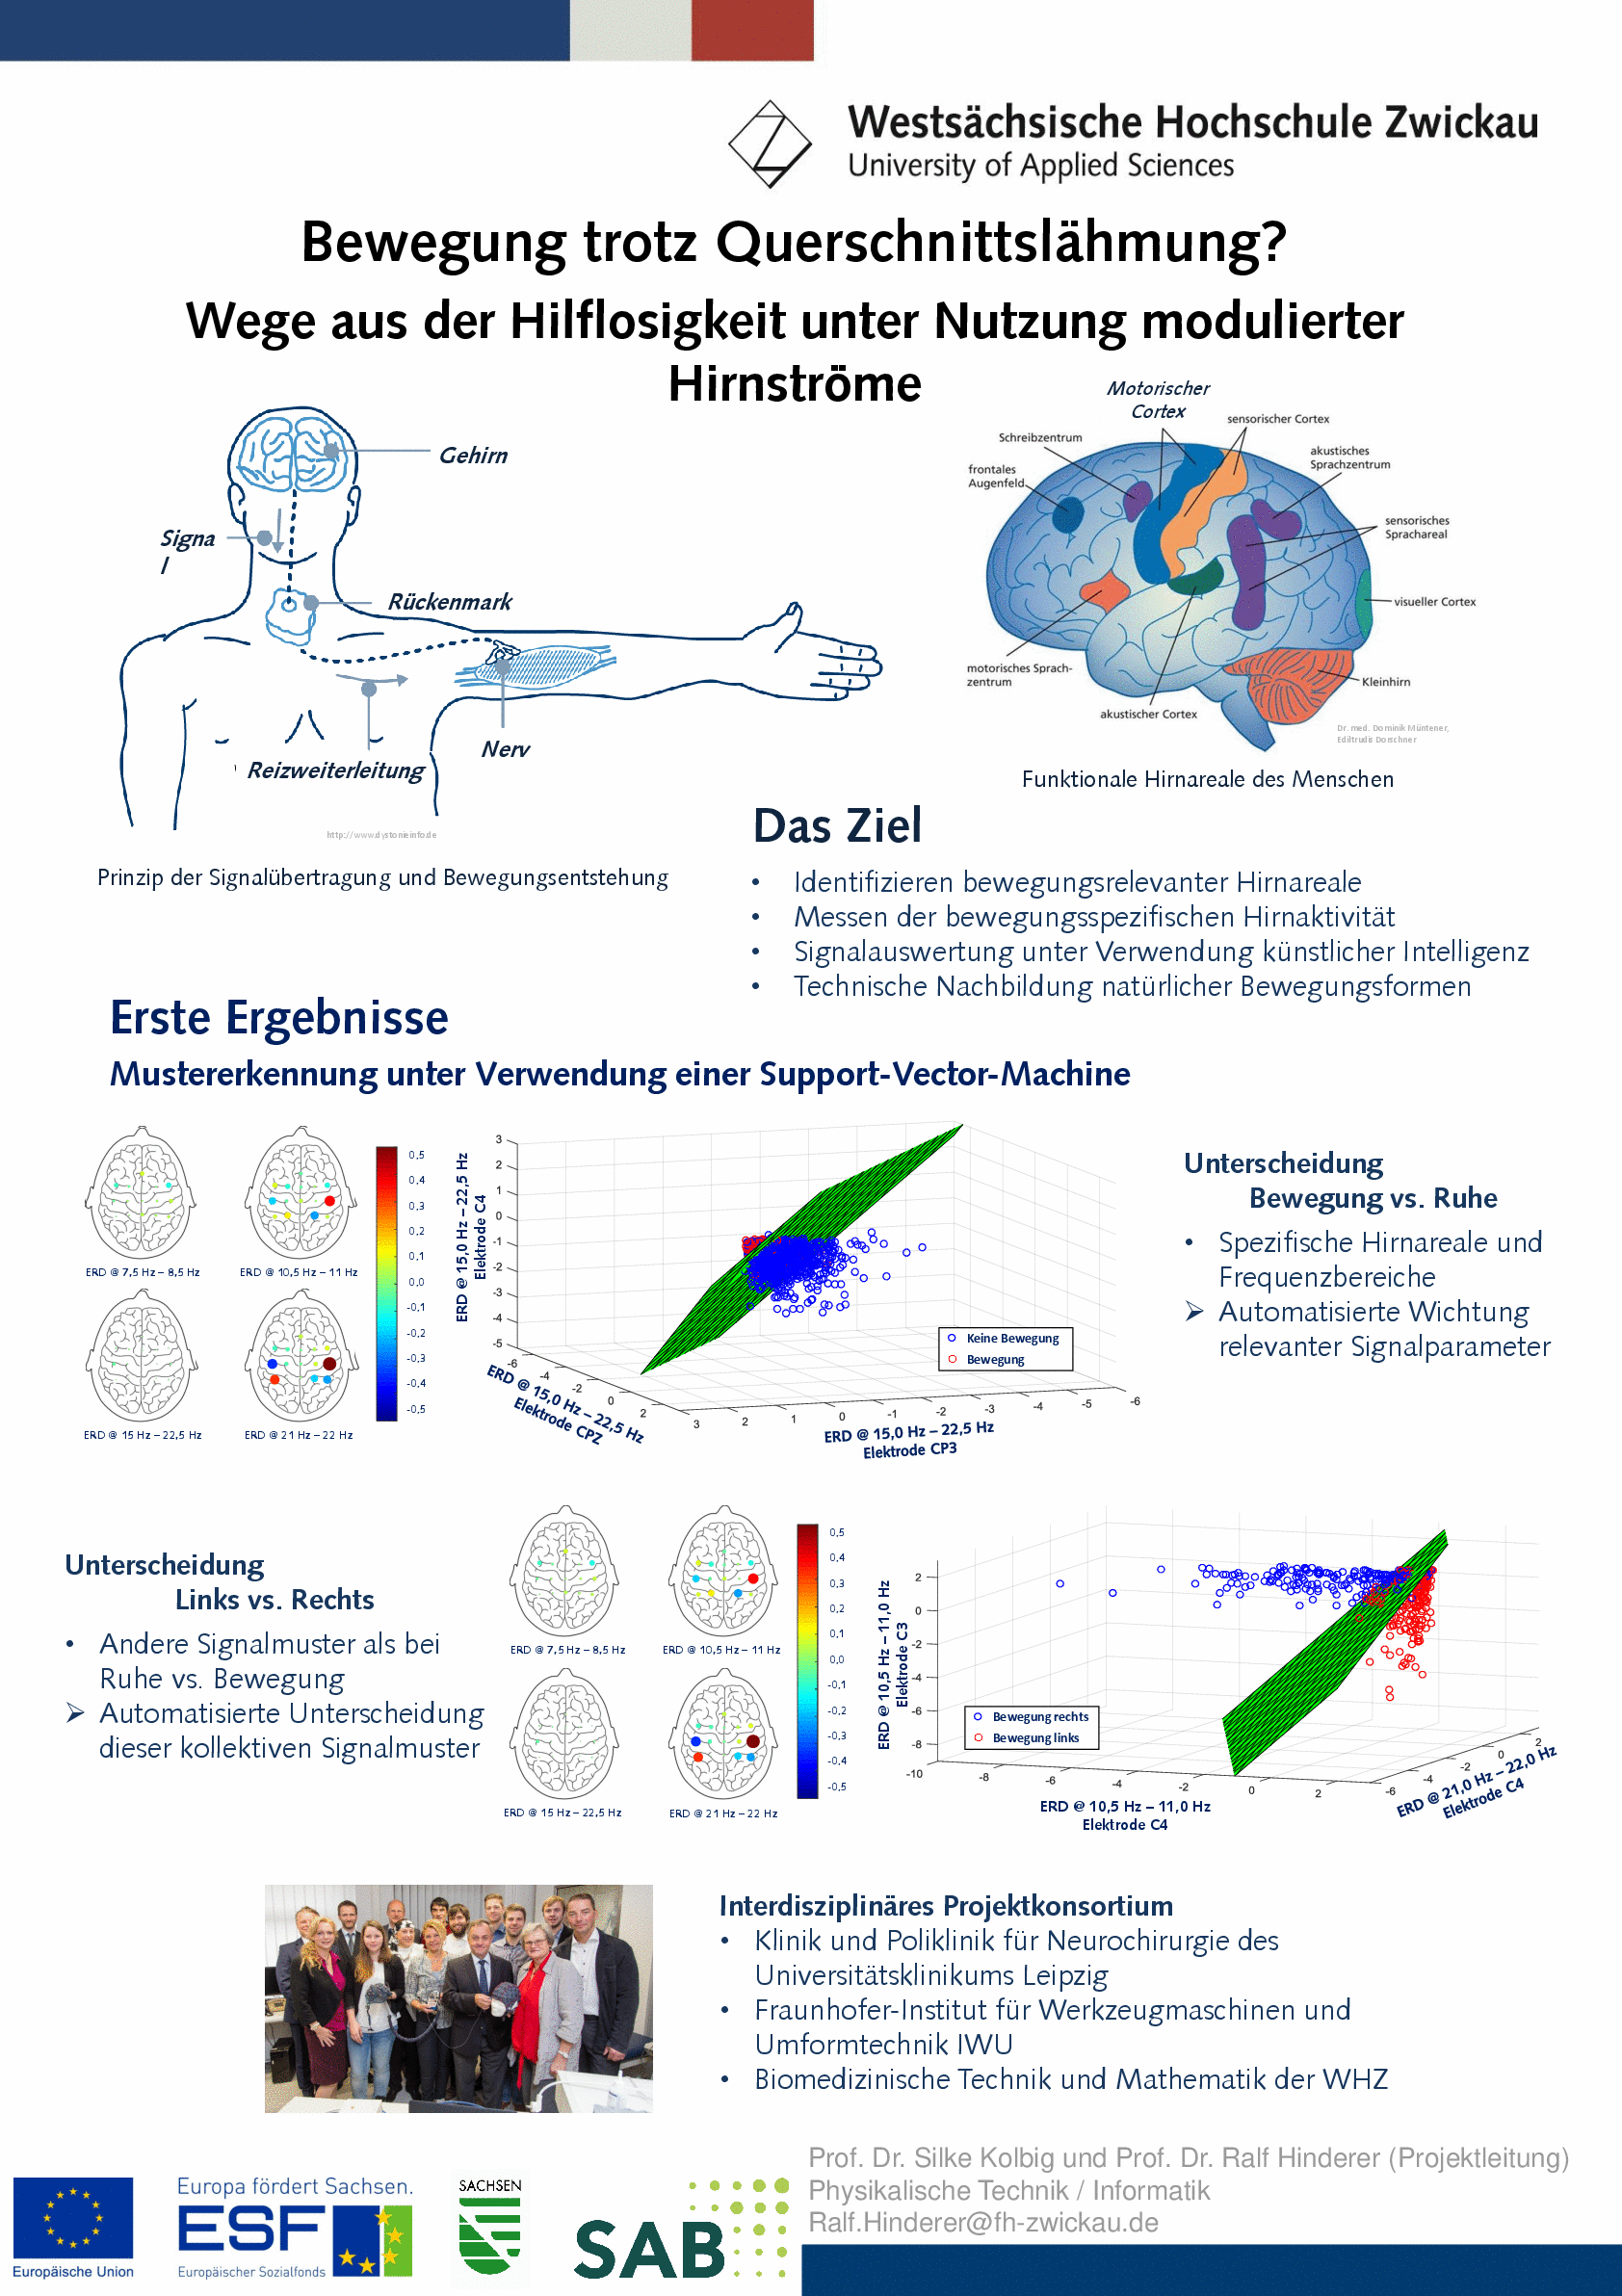 PDF: Poster. Thema: Bewegung trotz Querschnittslähmung? Wege aus der Hilflosigkeit unter Nutzung modulierter Hirnströme.